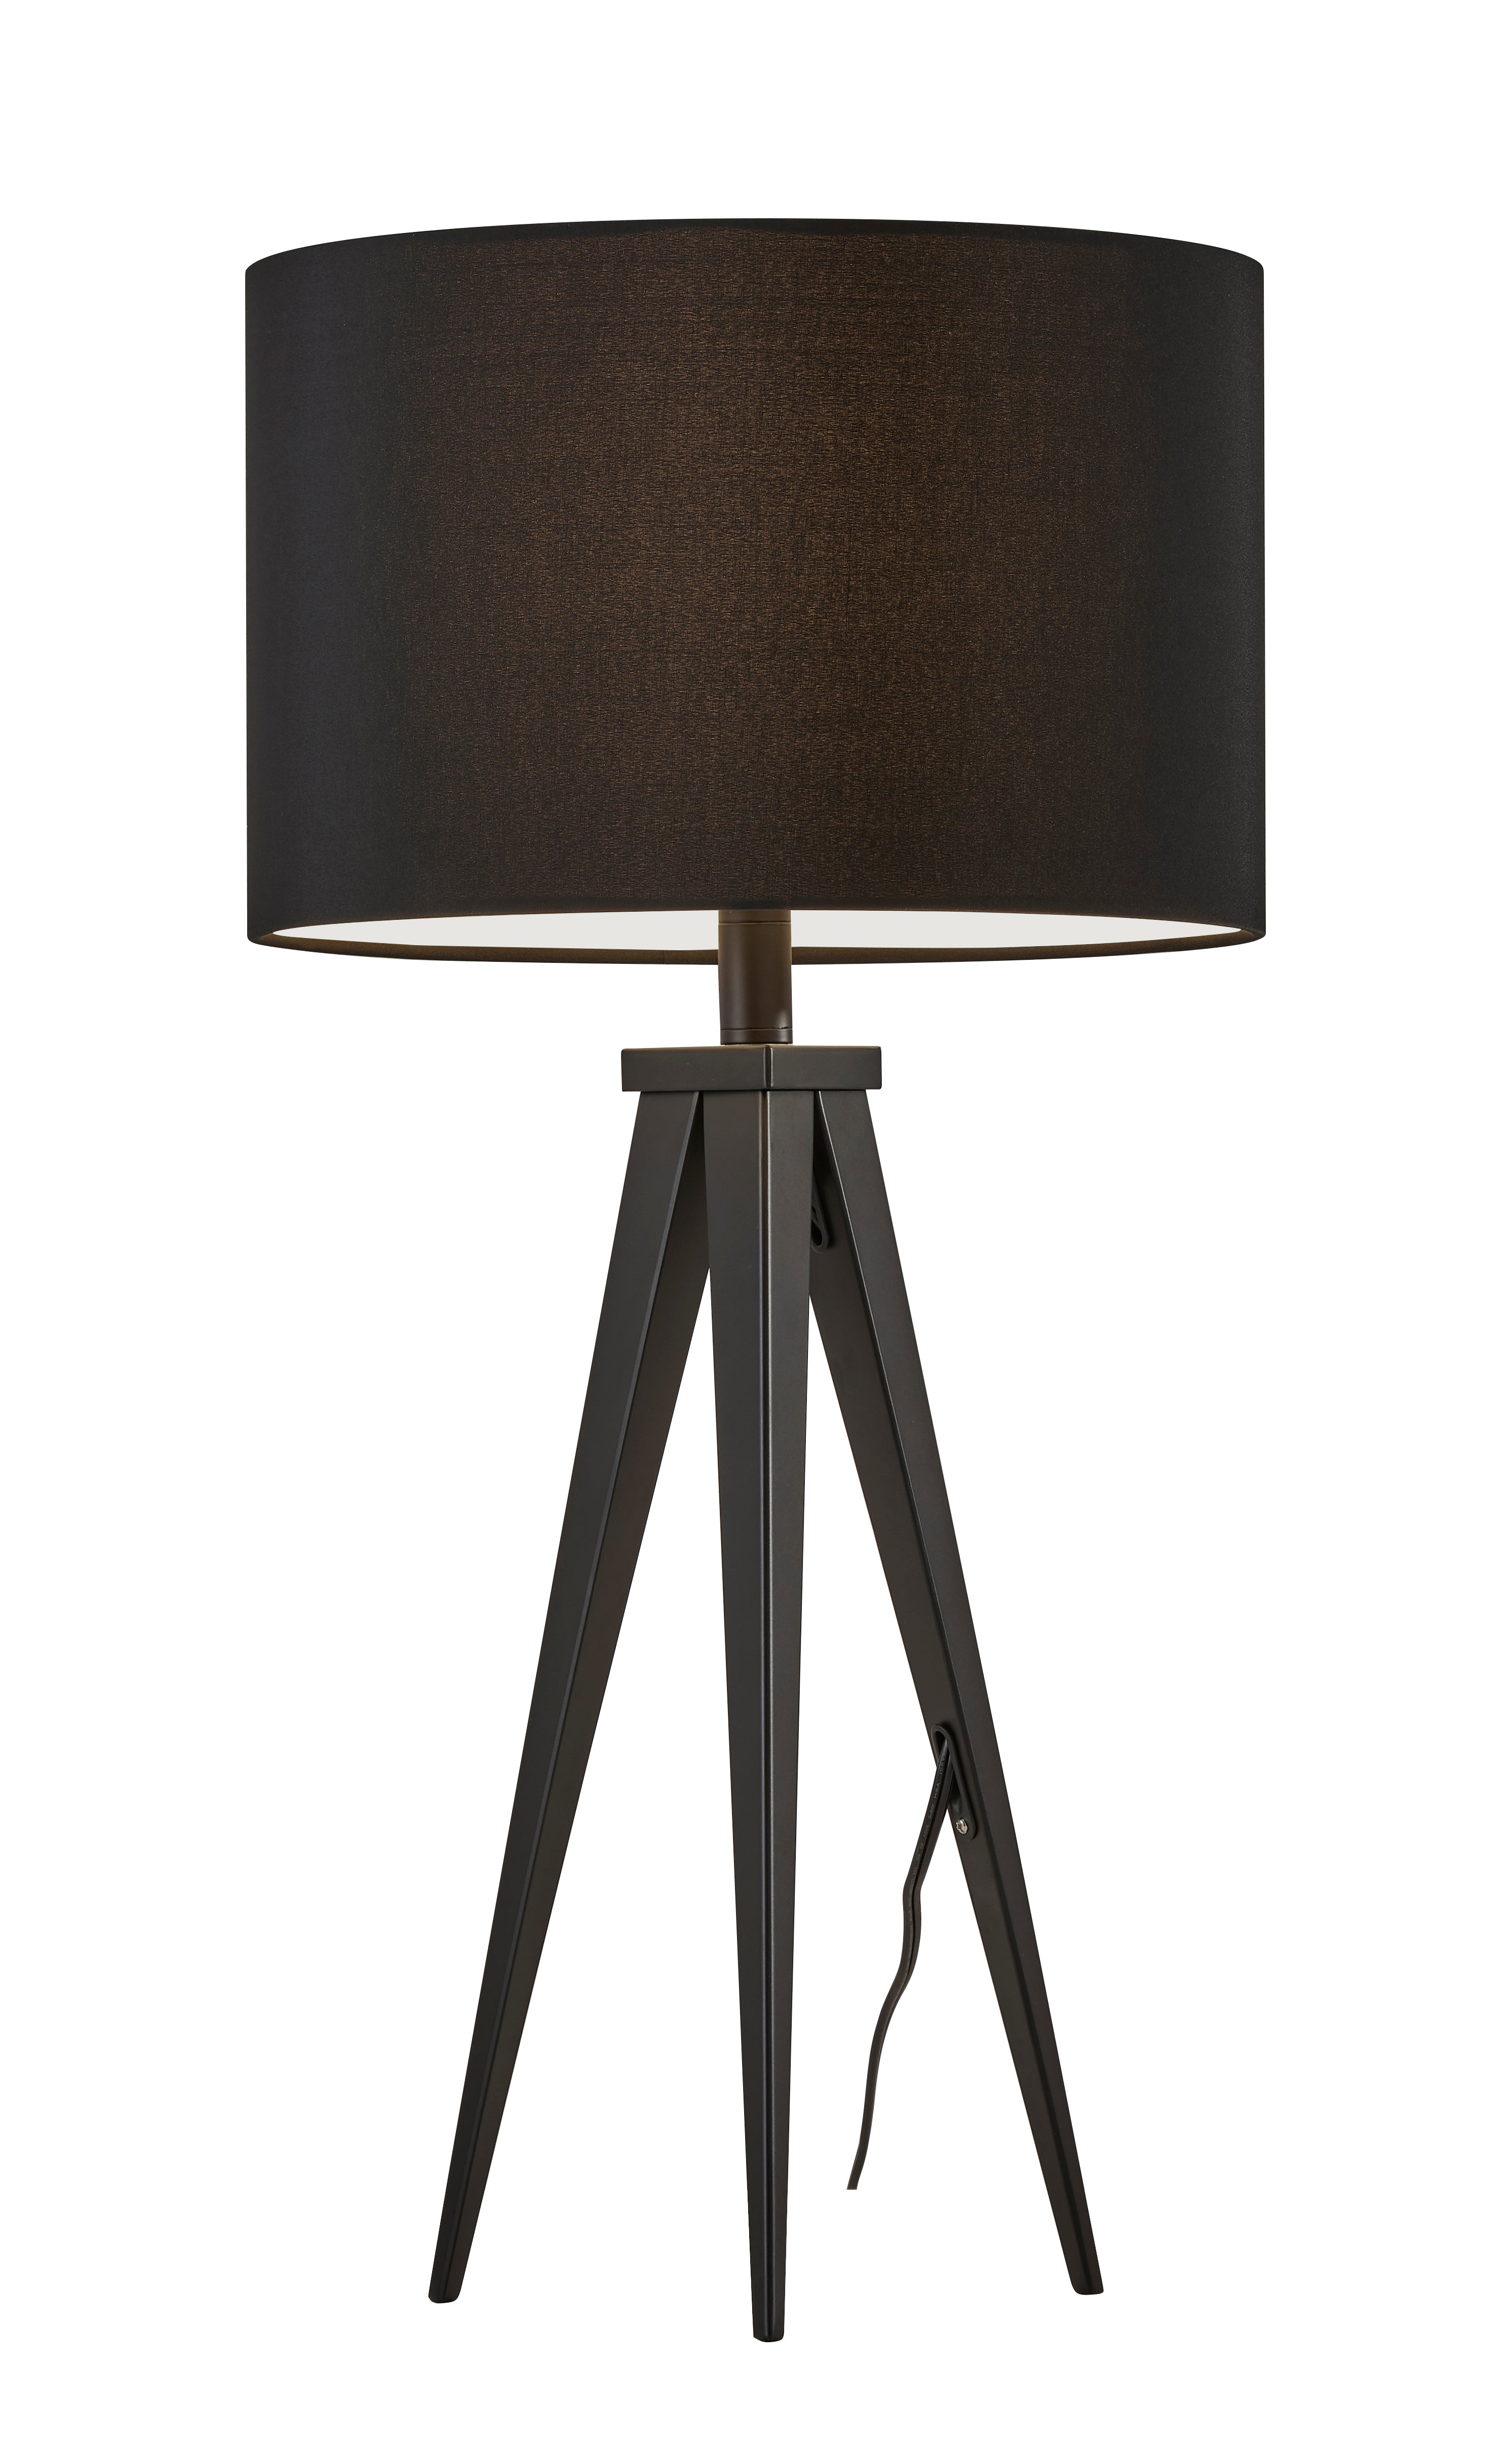 DIRECTOR Table lamp Black - 6423-01 | ADESSO